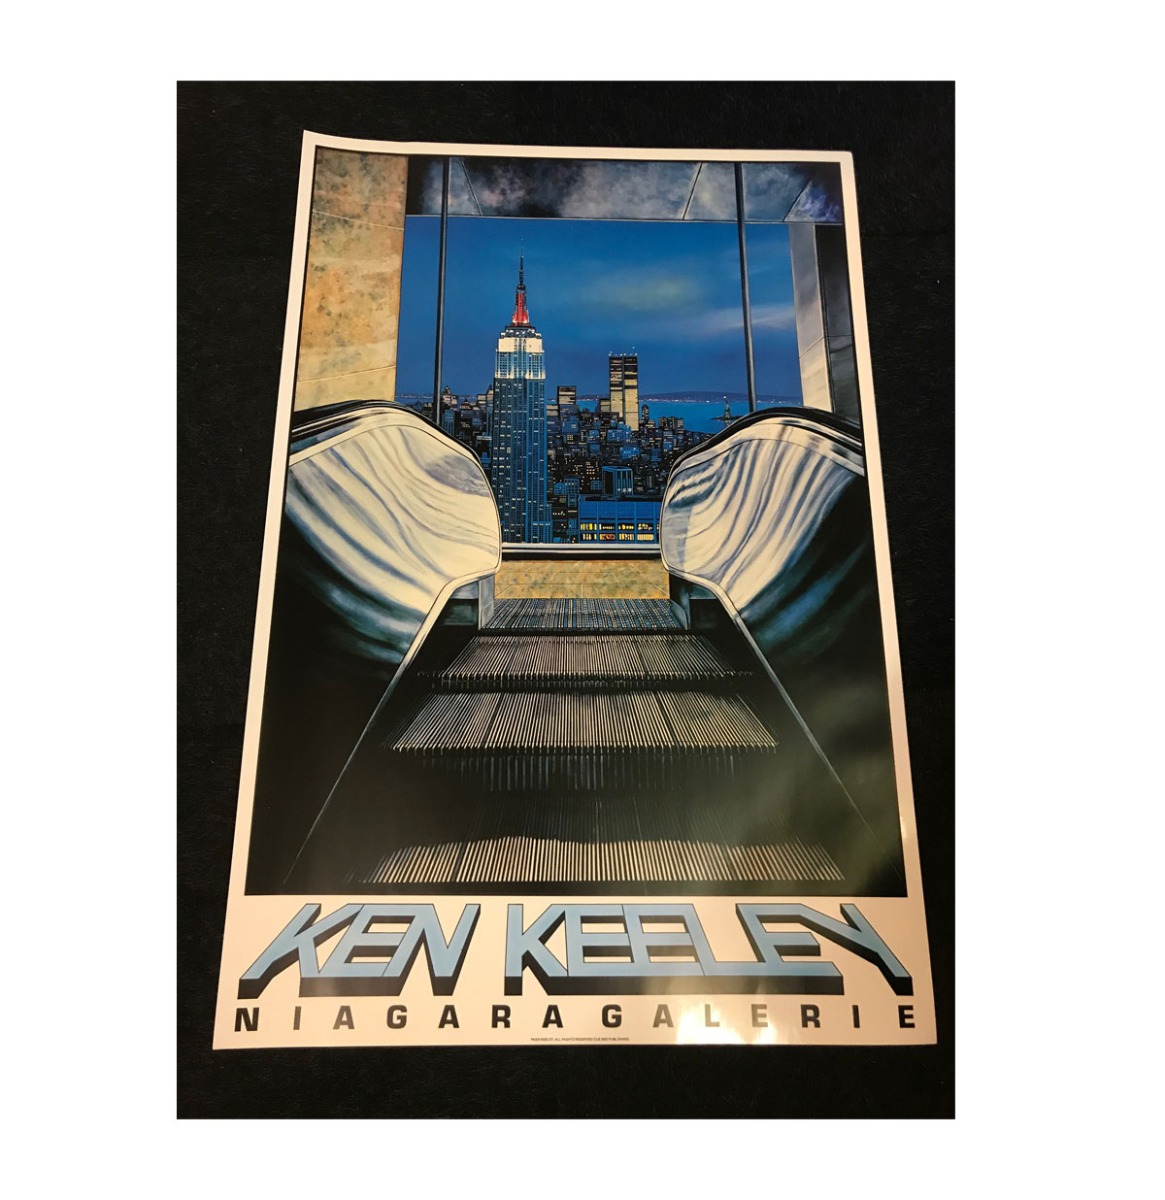 Ken Keeley Promotie Poster 91 x 61.5 cm